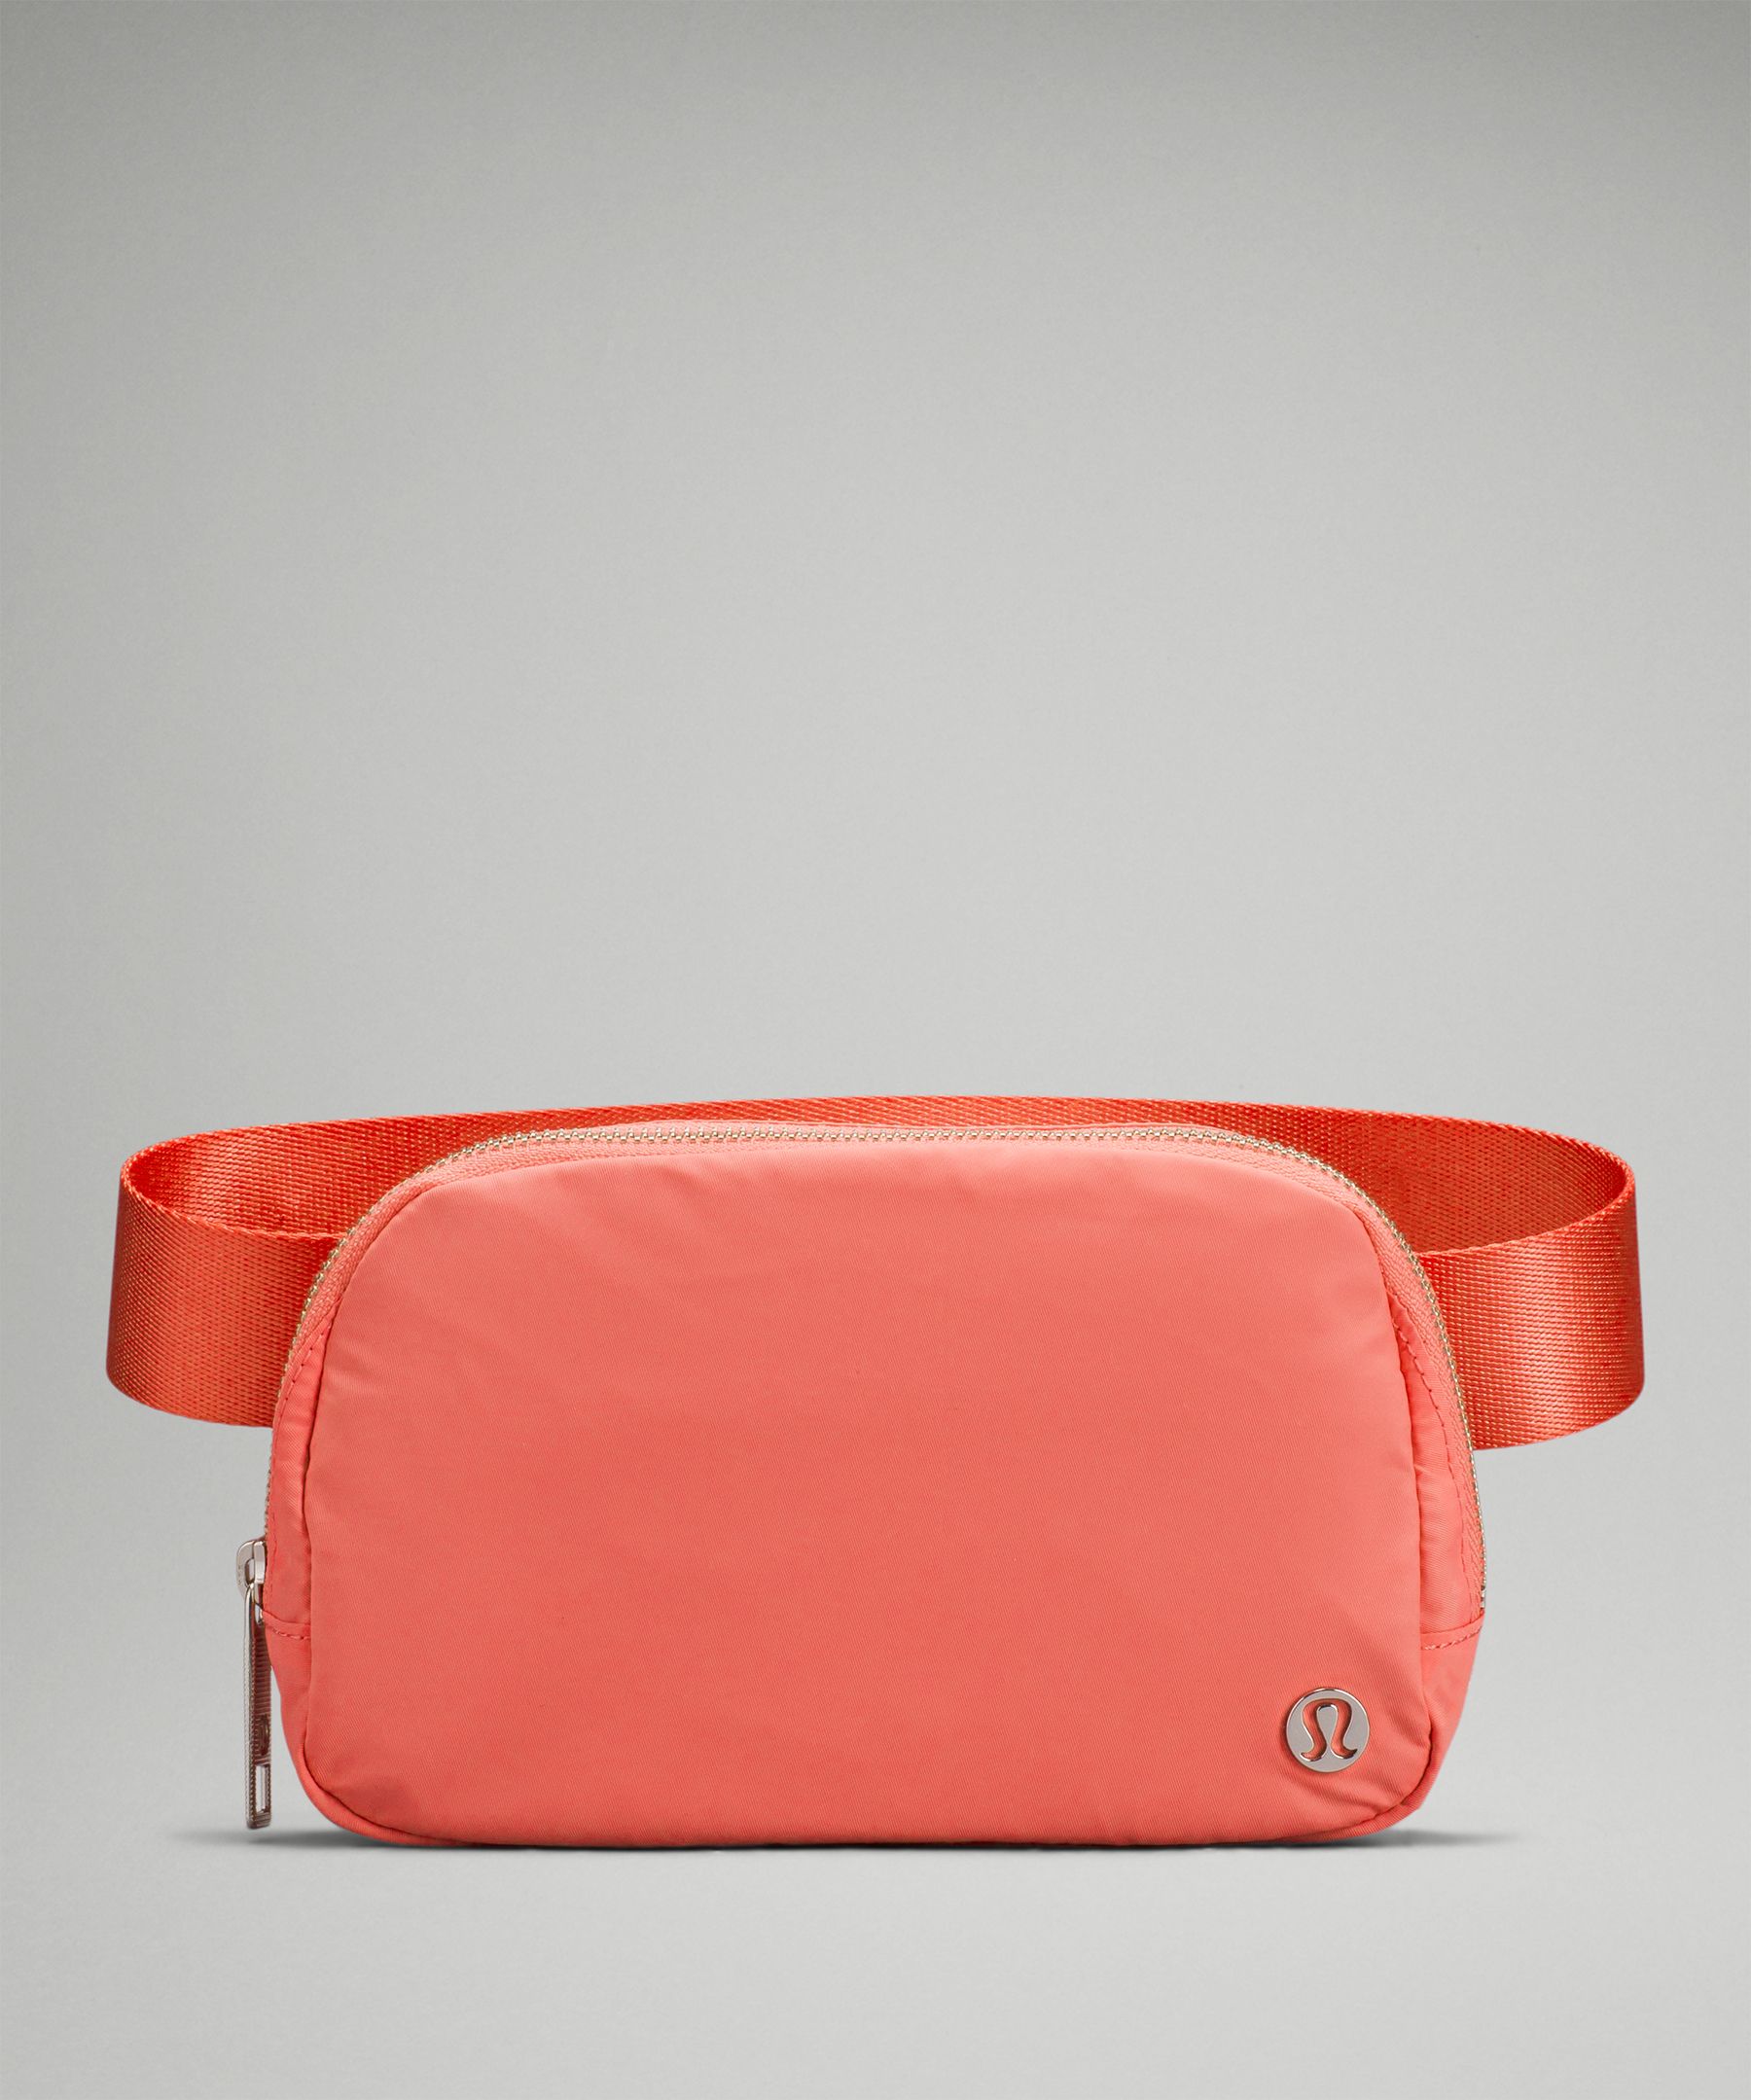 Lululemon Everywhere Belt Bag OG Original Pink Lychee Raspberry